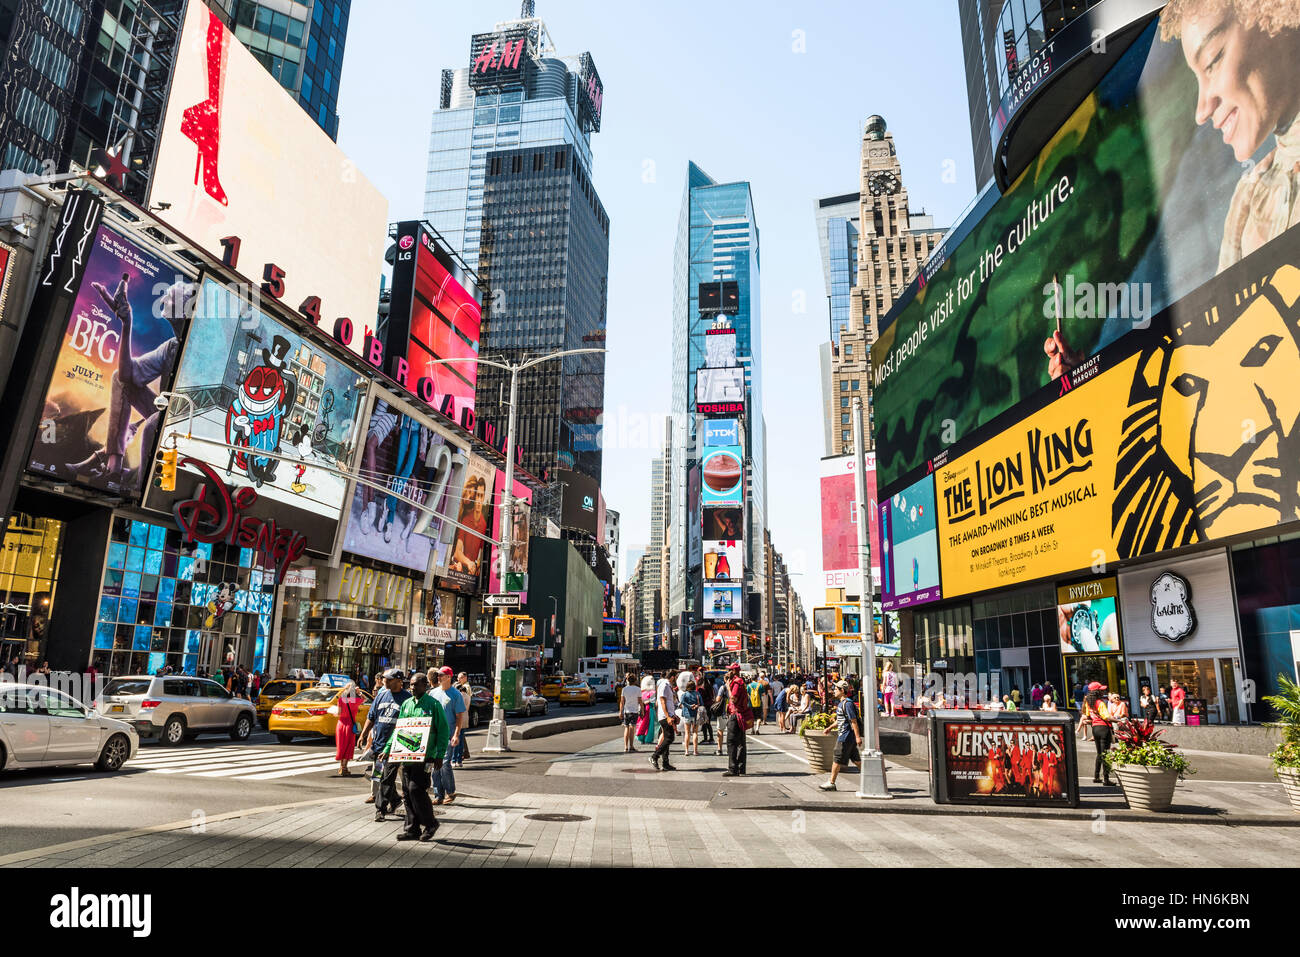 Nueva York, Estados Unidos - Junio 18, 2016: Times Square durante el día  con anuncios de musical del Rey León y tiendas como Forever 21 y H&M  Fotografía de stock - Alamy